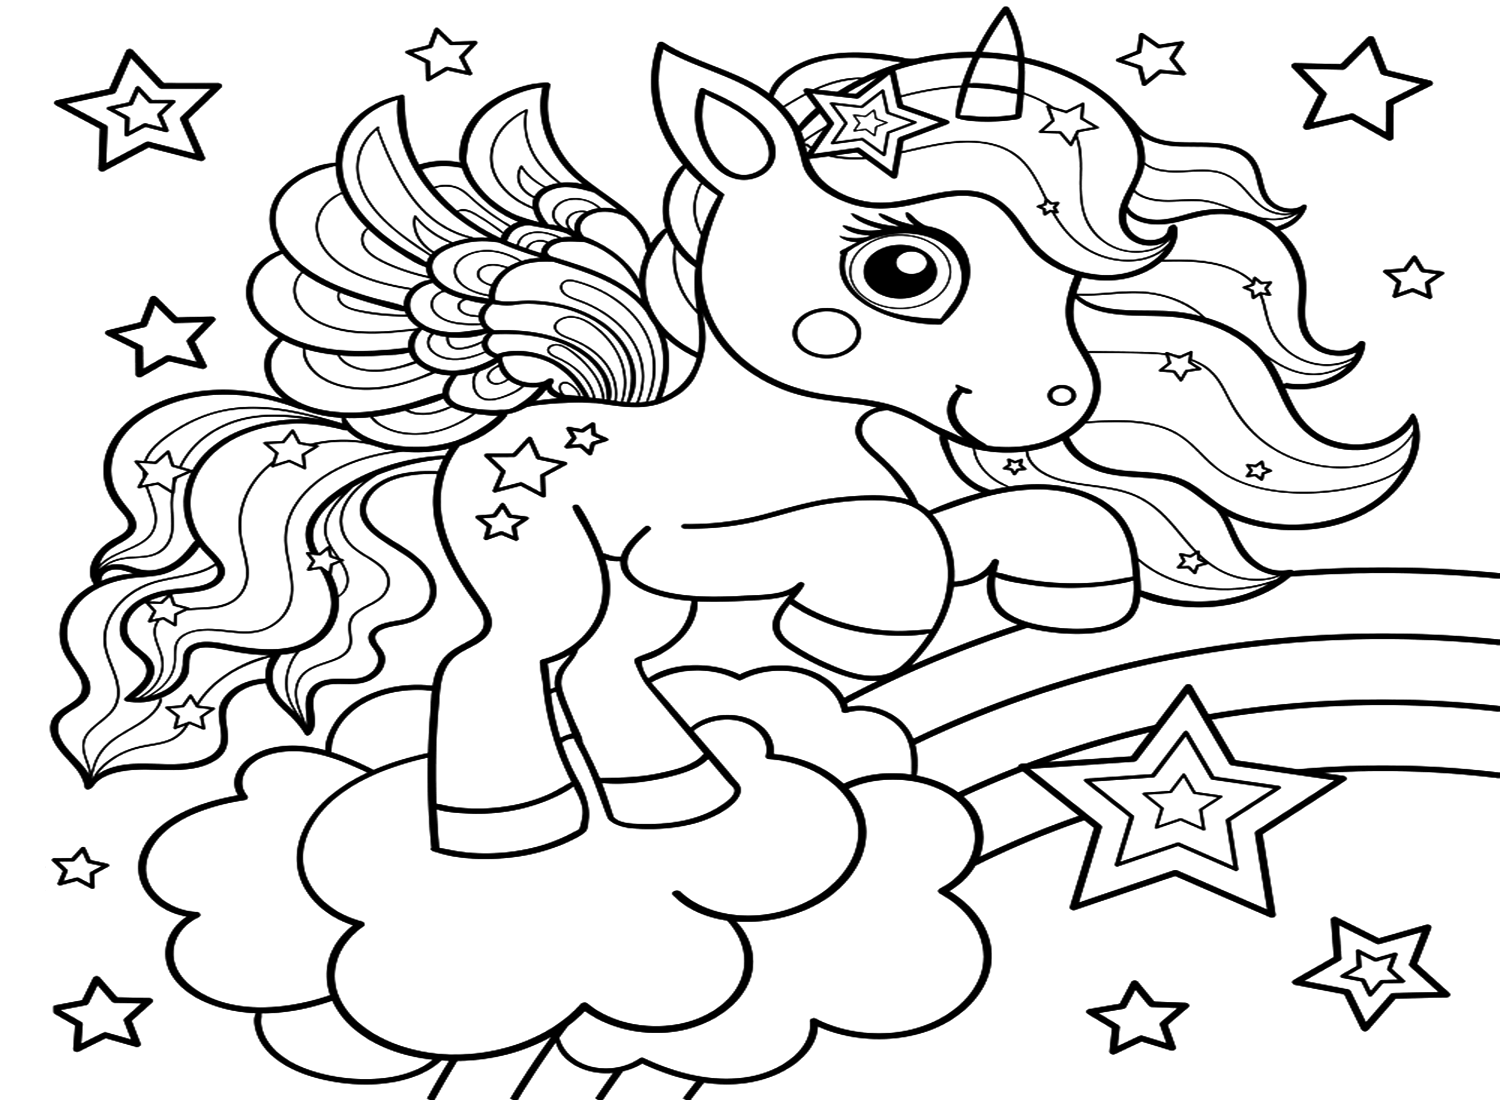 Hoja para colorear de unicornio de Unicornio